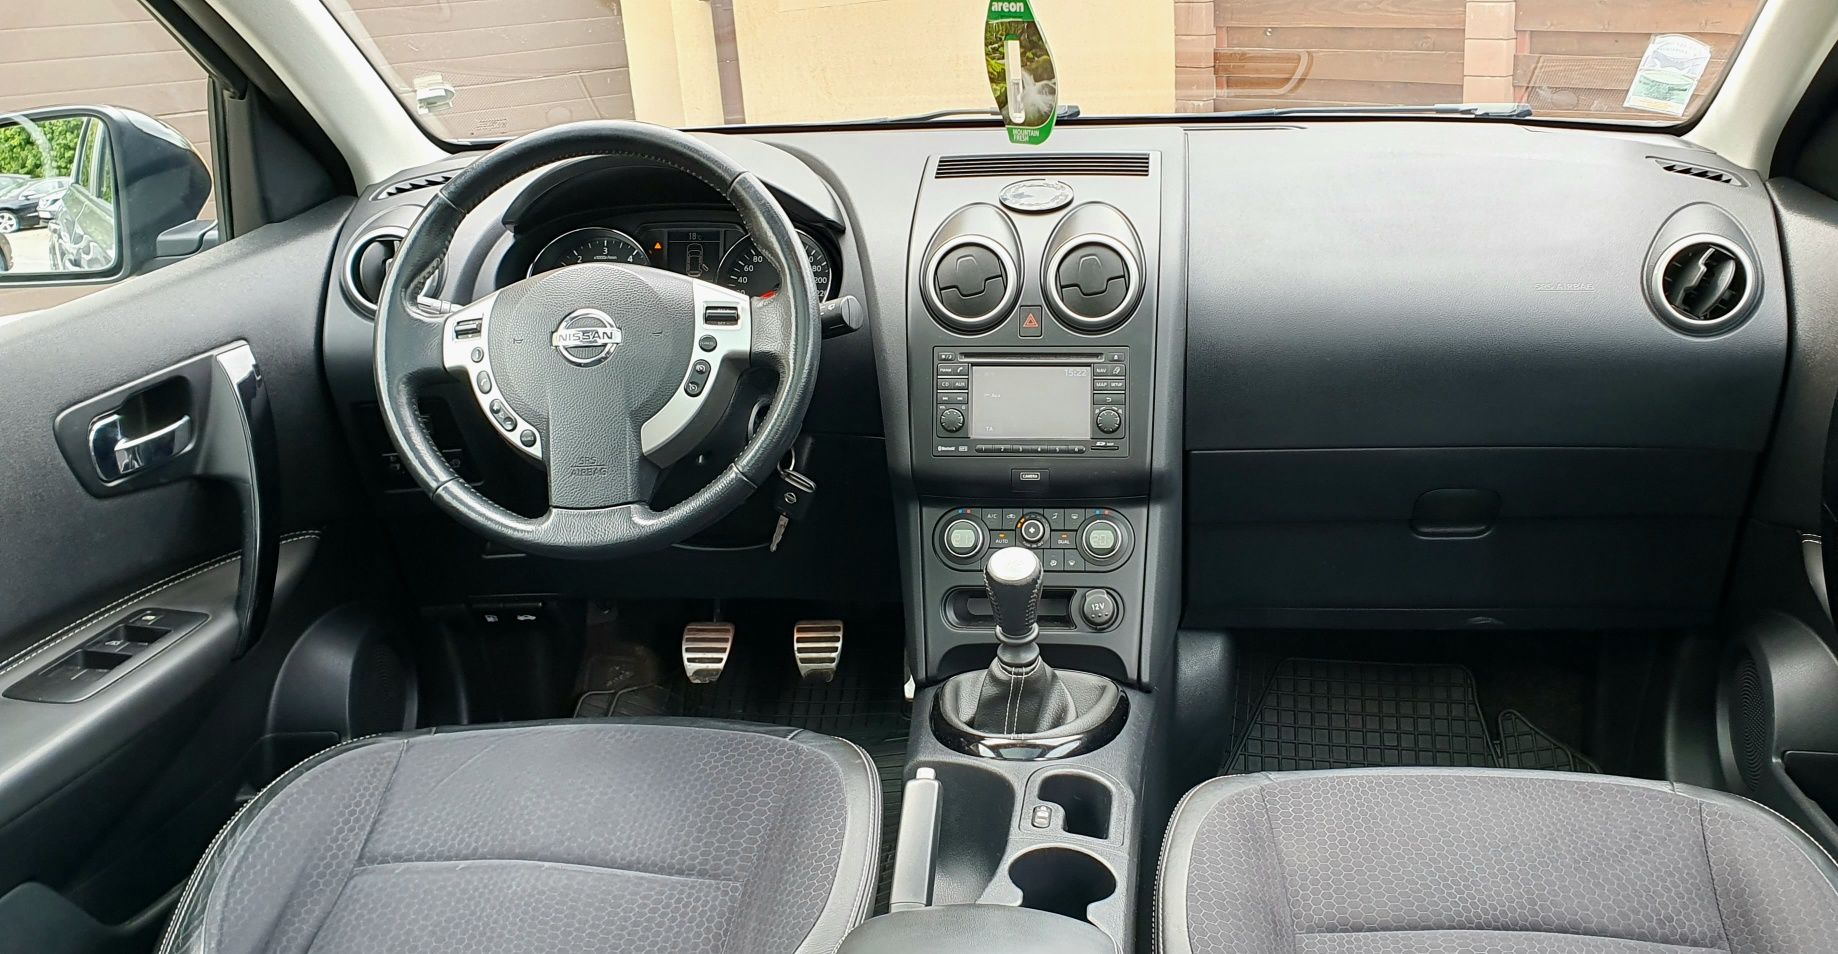 Nissan Qashqai 2013* 1.6 dCi 130 Cp*Tekna*Navigatie Camera 360Grade